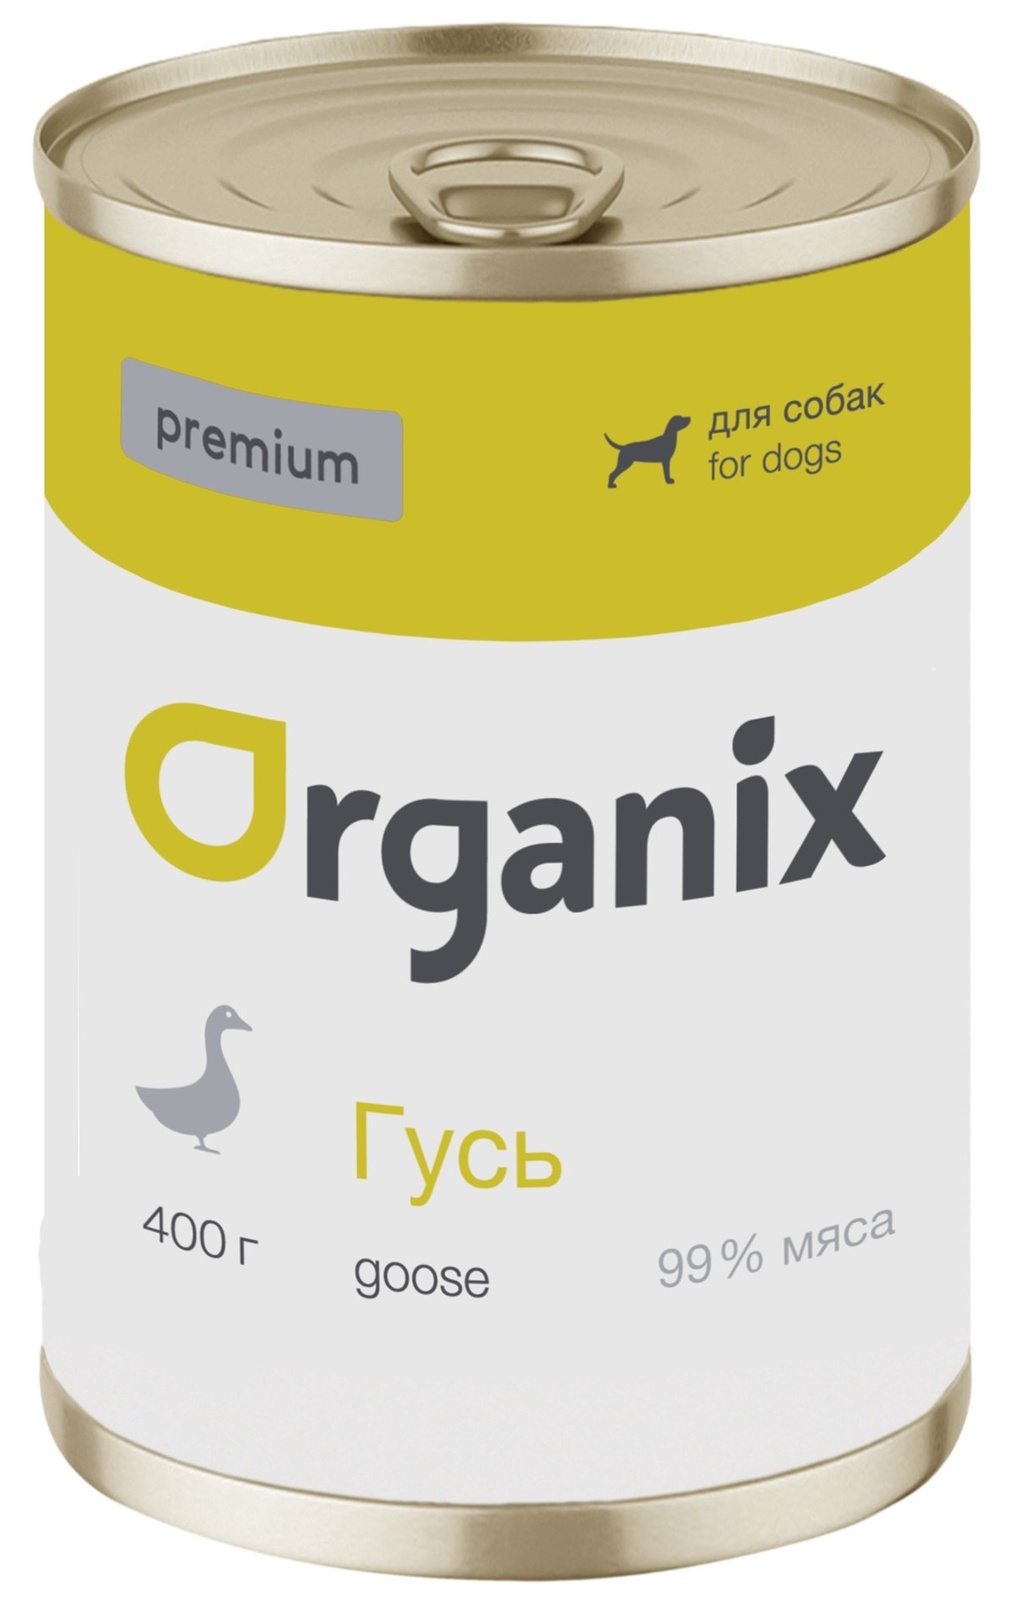 Organix консервы Organix монобелковые премиум консервы для собак, с гусем (400 г) organix консервы organix консервы для собак телятина с зеленой фасолью 400 г